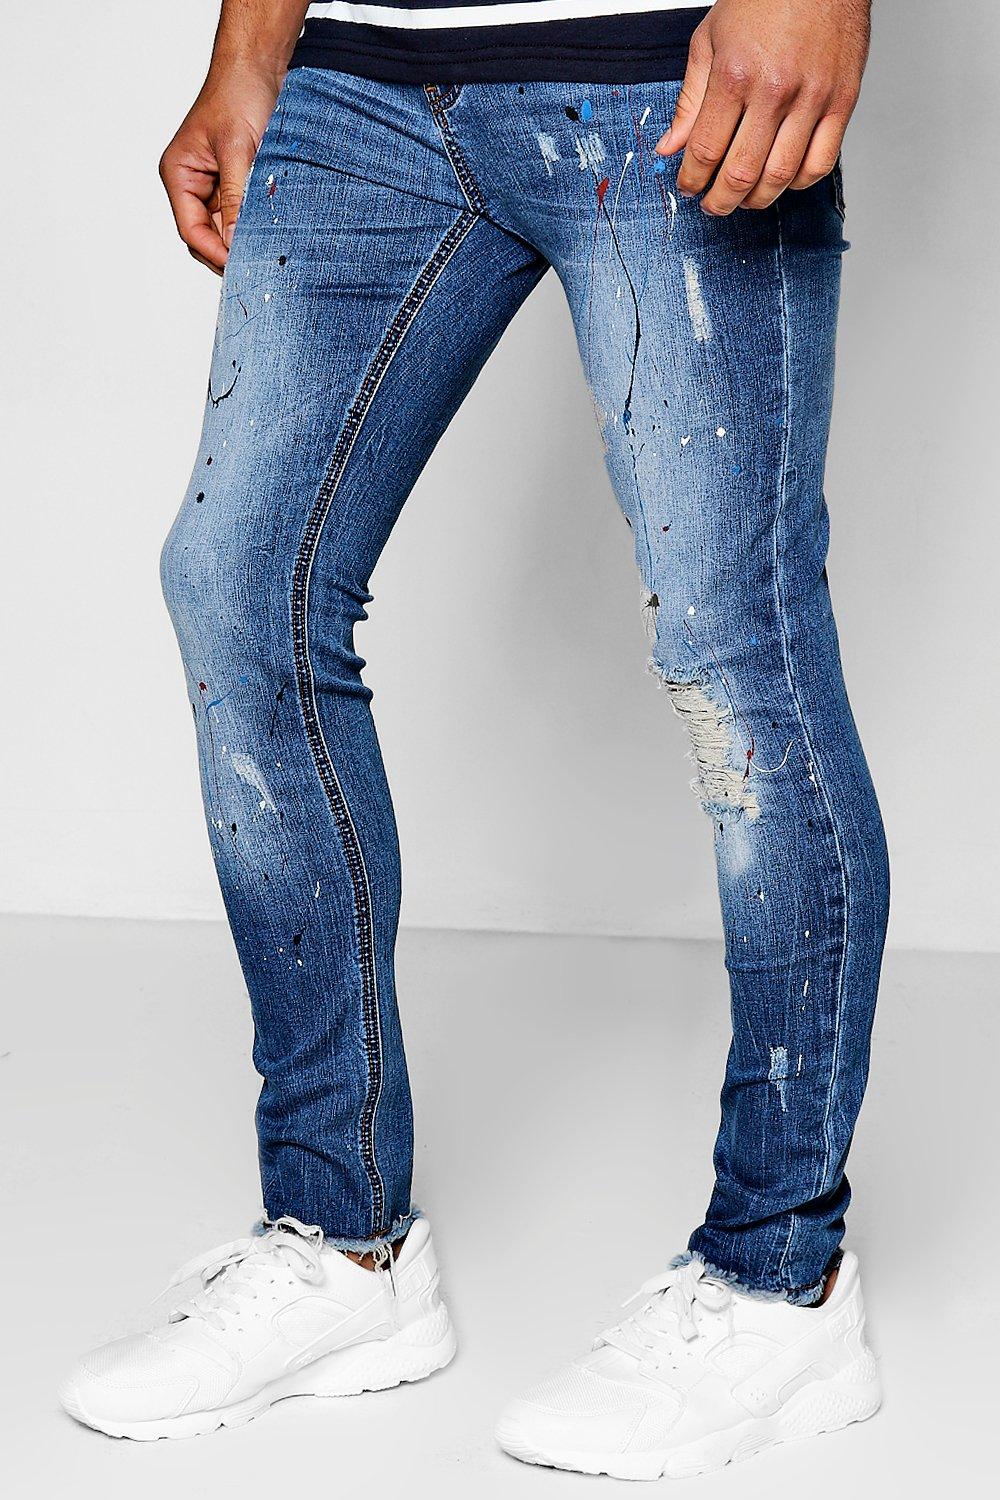 jeans with paint splash